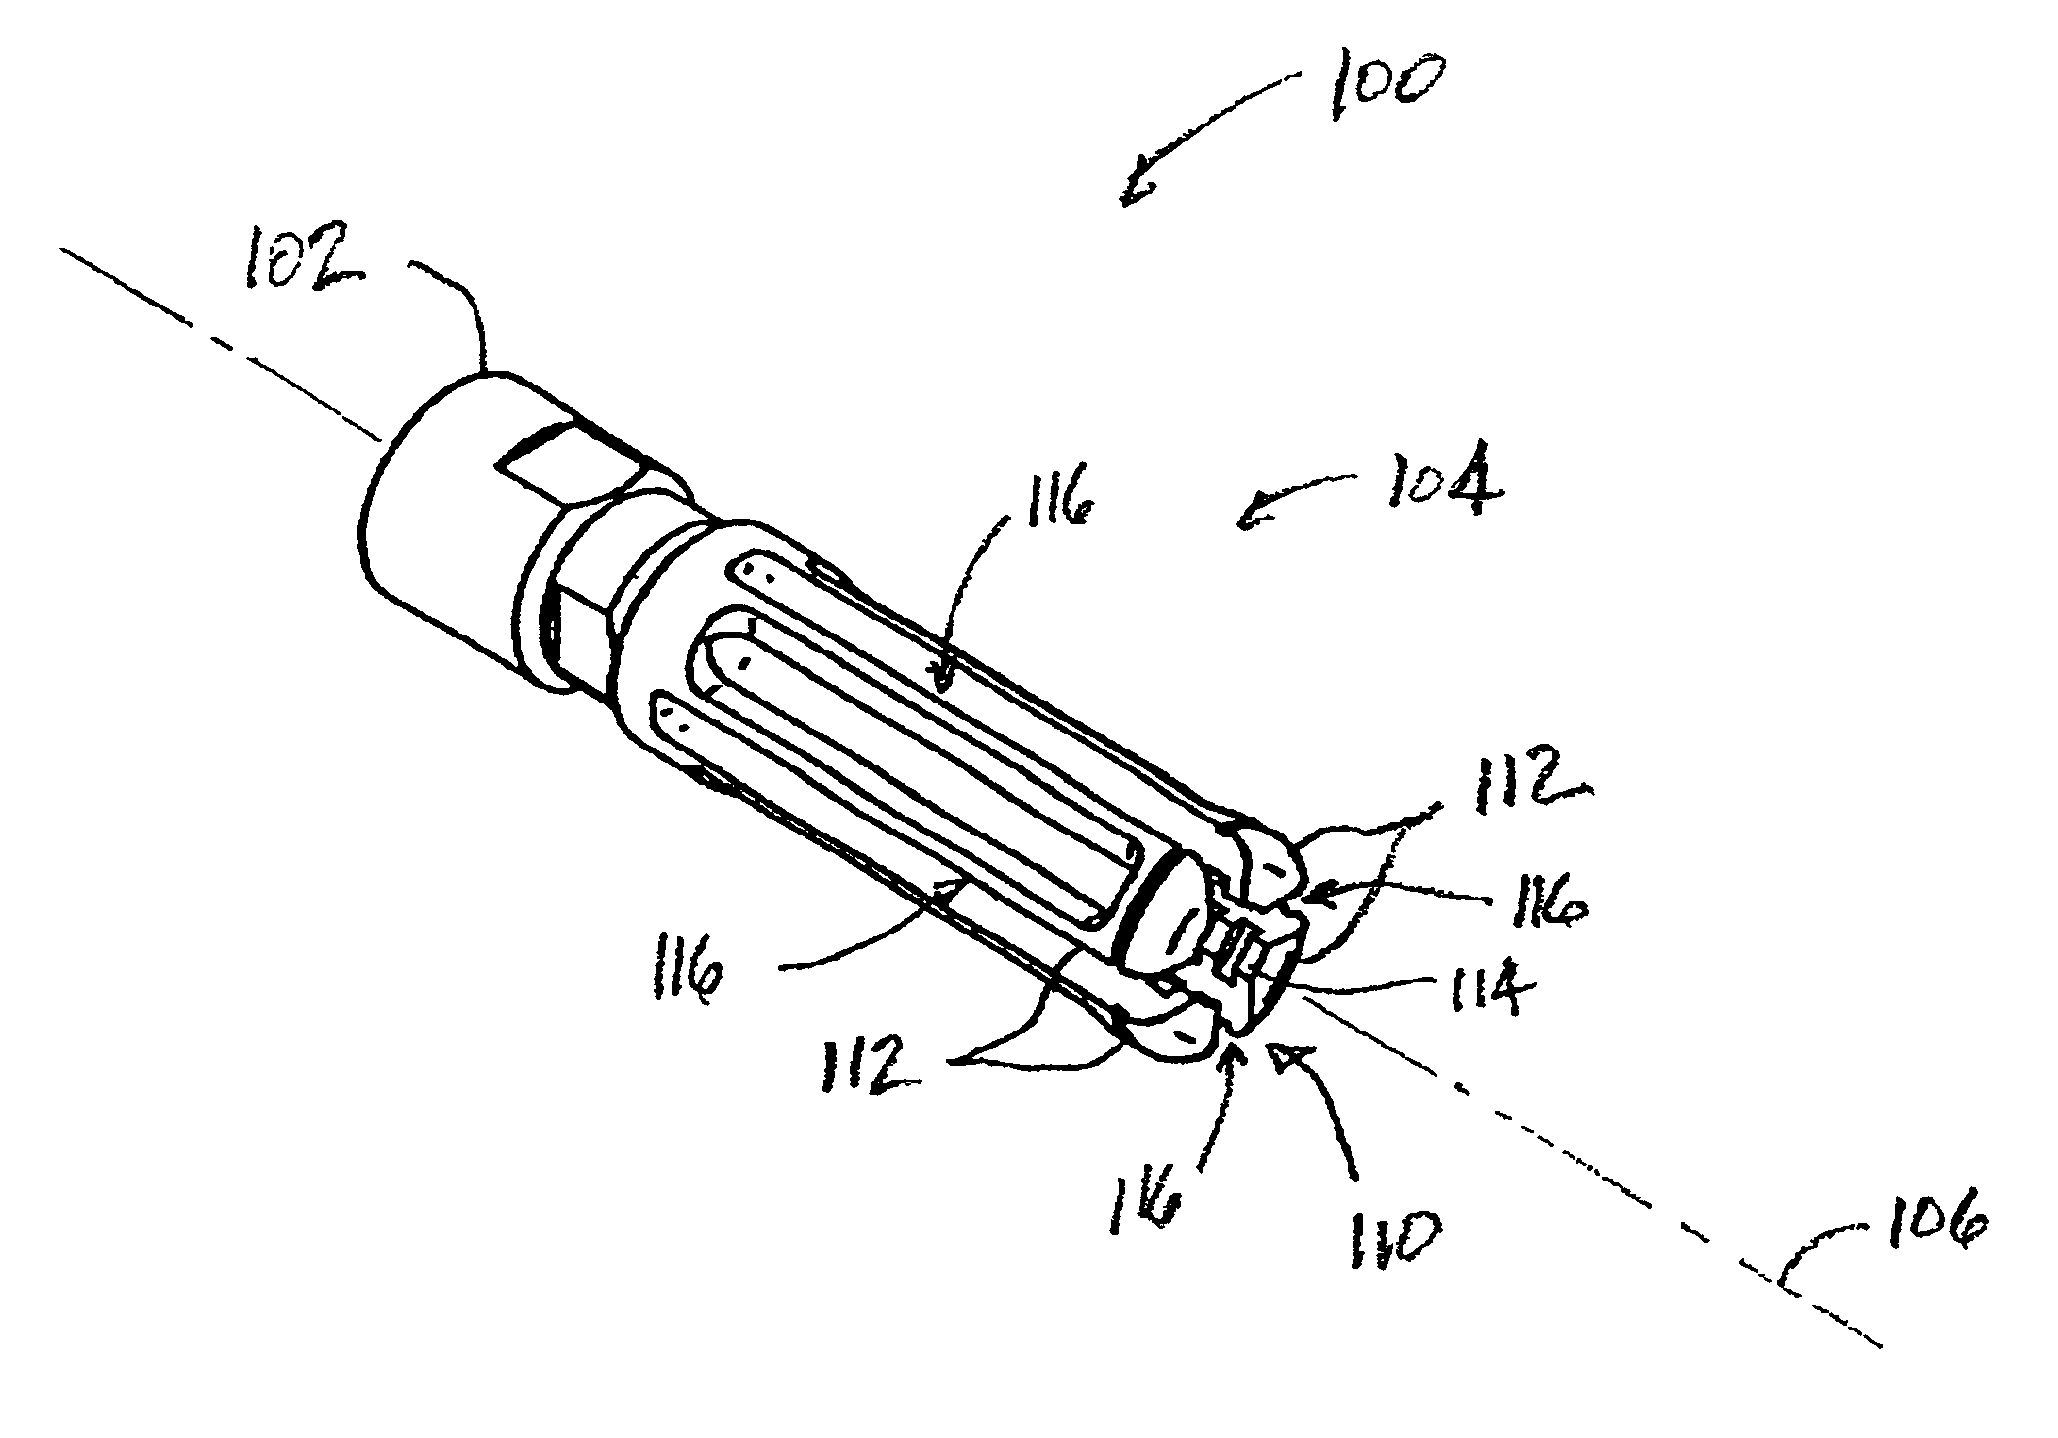 Flash suppressor apparatus and methods